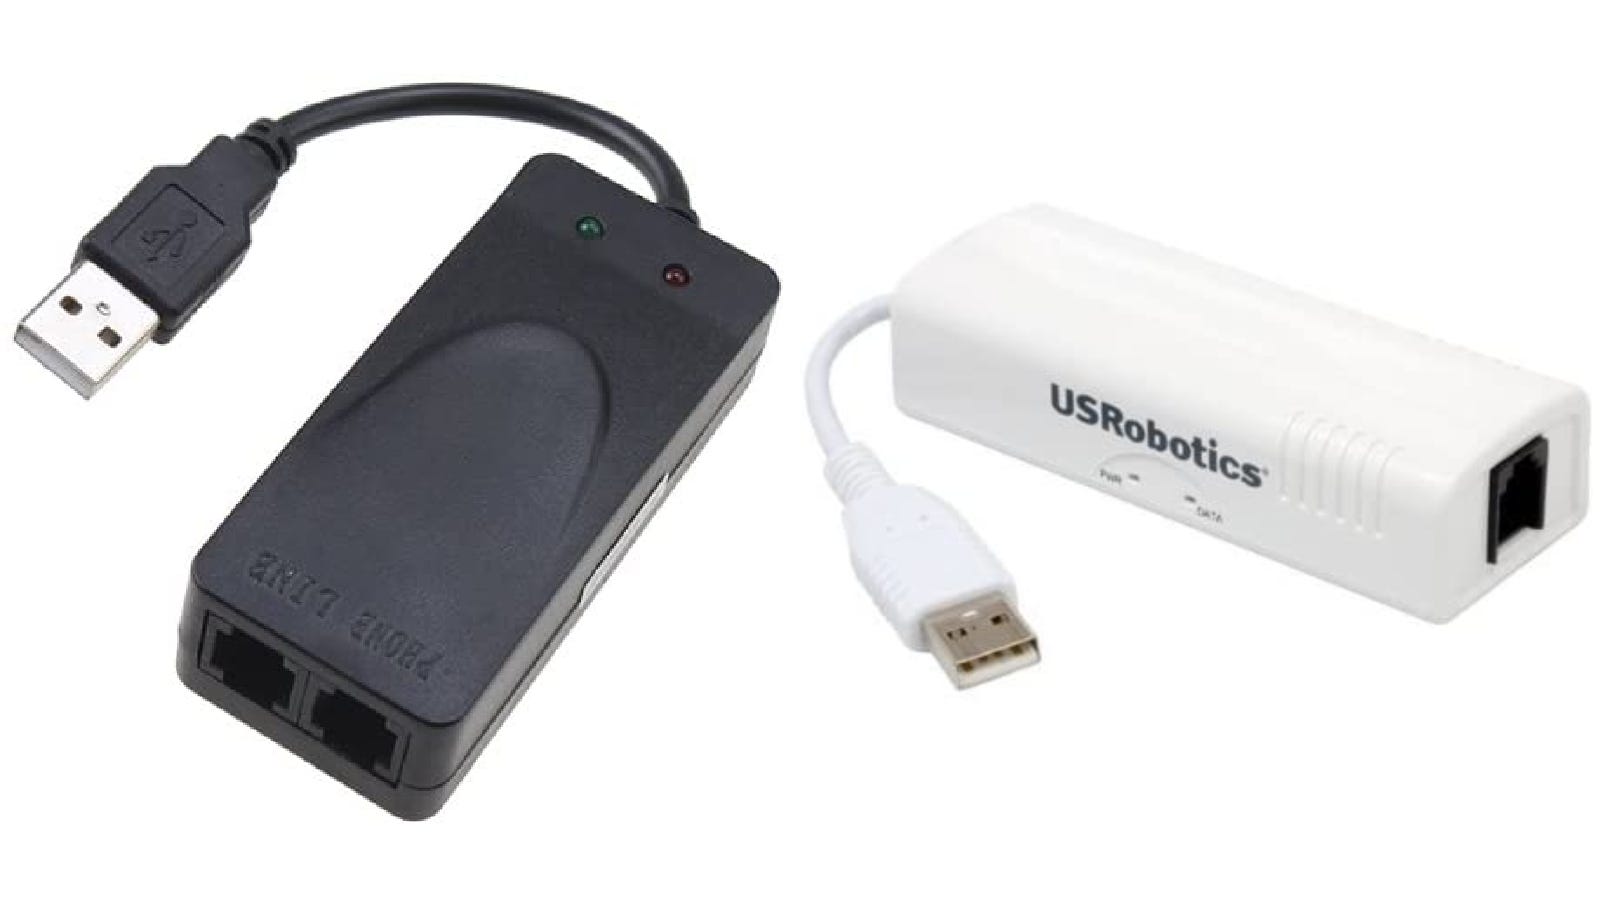 Les meilleurs modems USB pour votre ordinateur